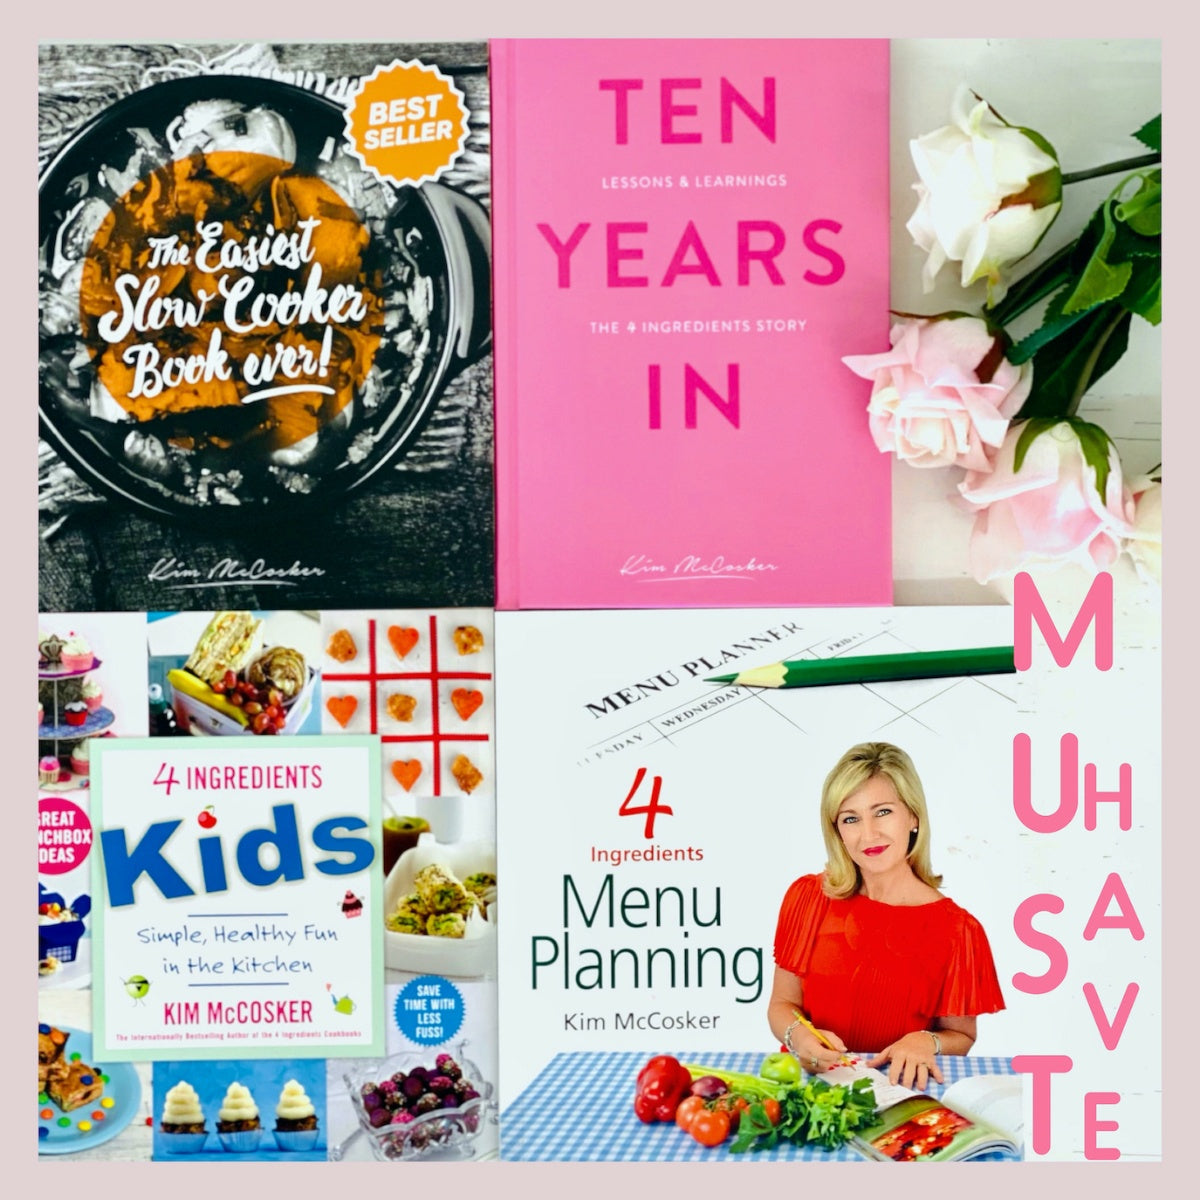 The Easiest Slow Cooker Book ever + 4 Ingredients Kids + 4 Ingredients Menu Planning + a FREE copy of Ten Years In